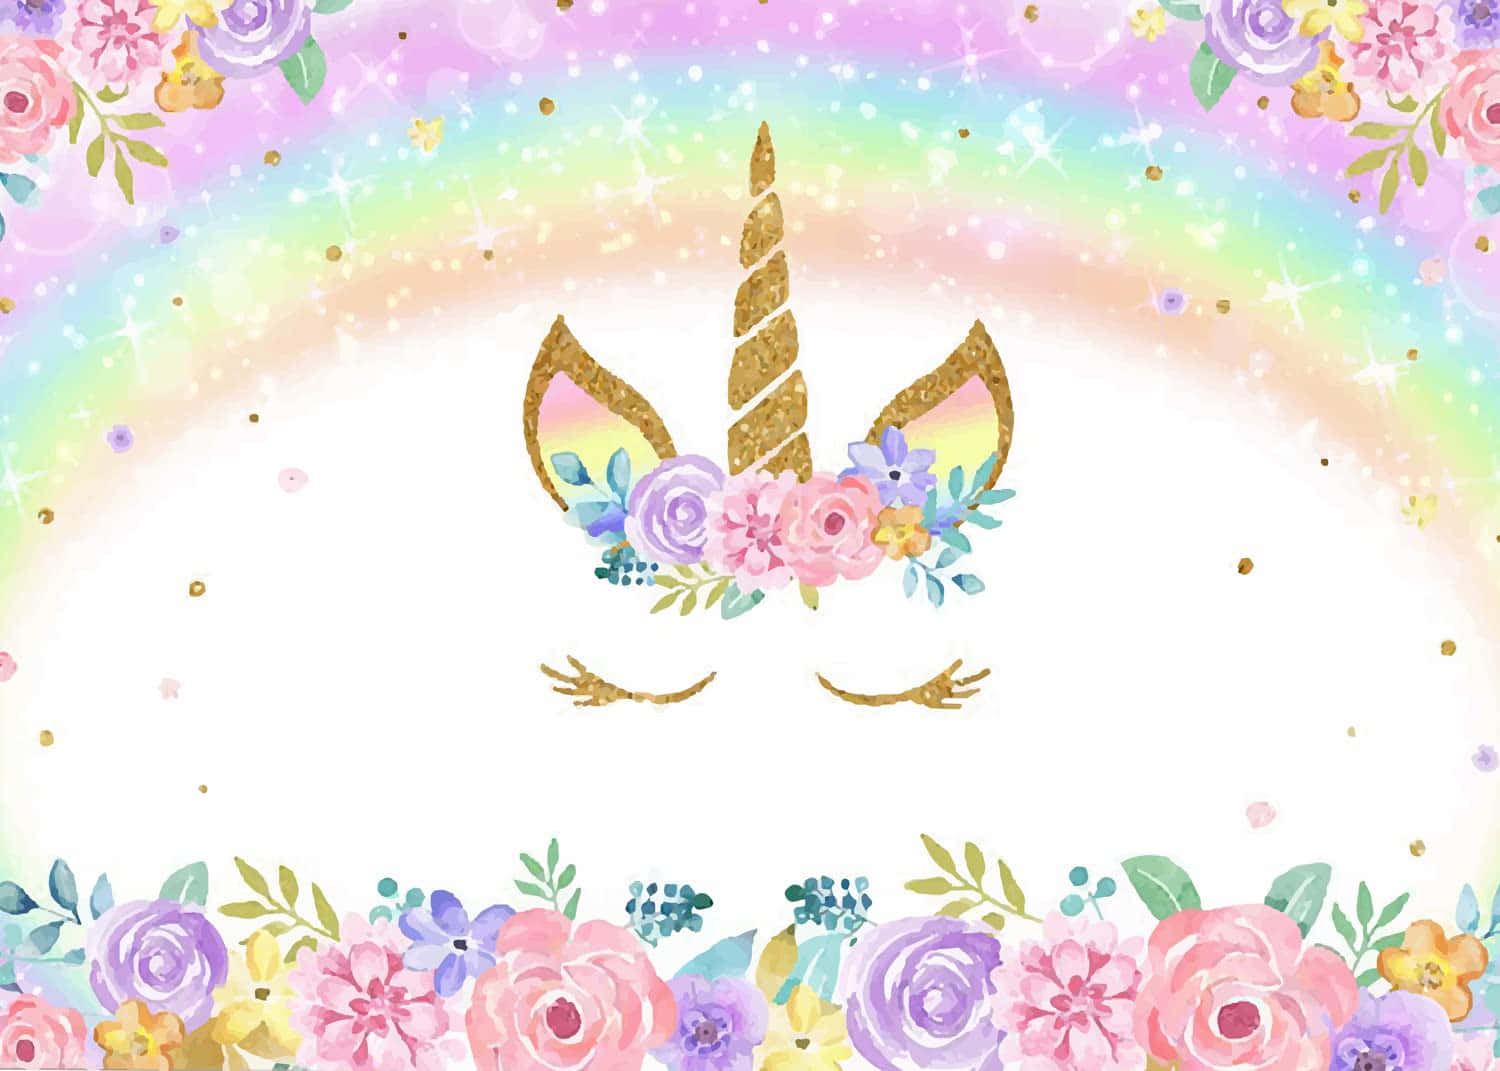 Magical Beauty - A Unicorn Against a Vibrant Rainbow